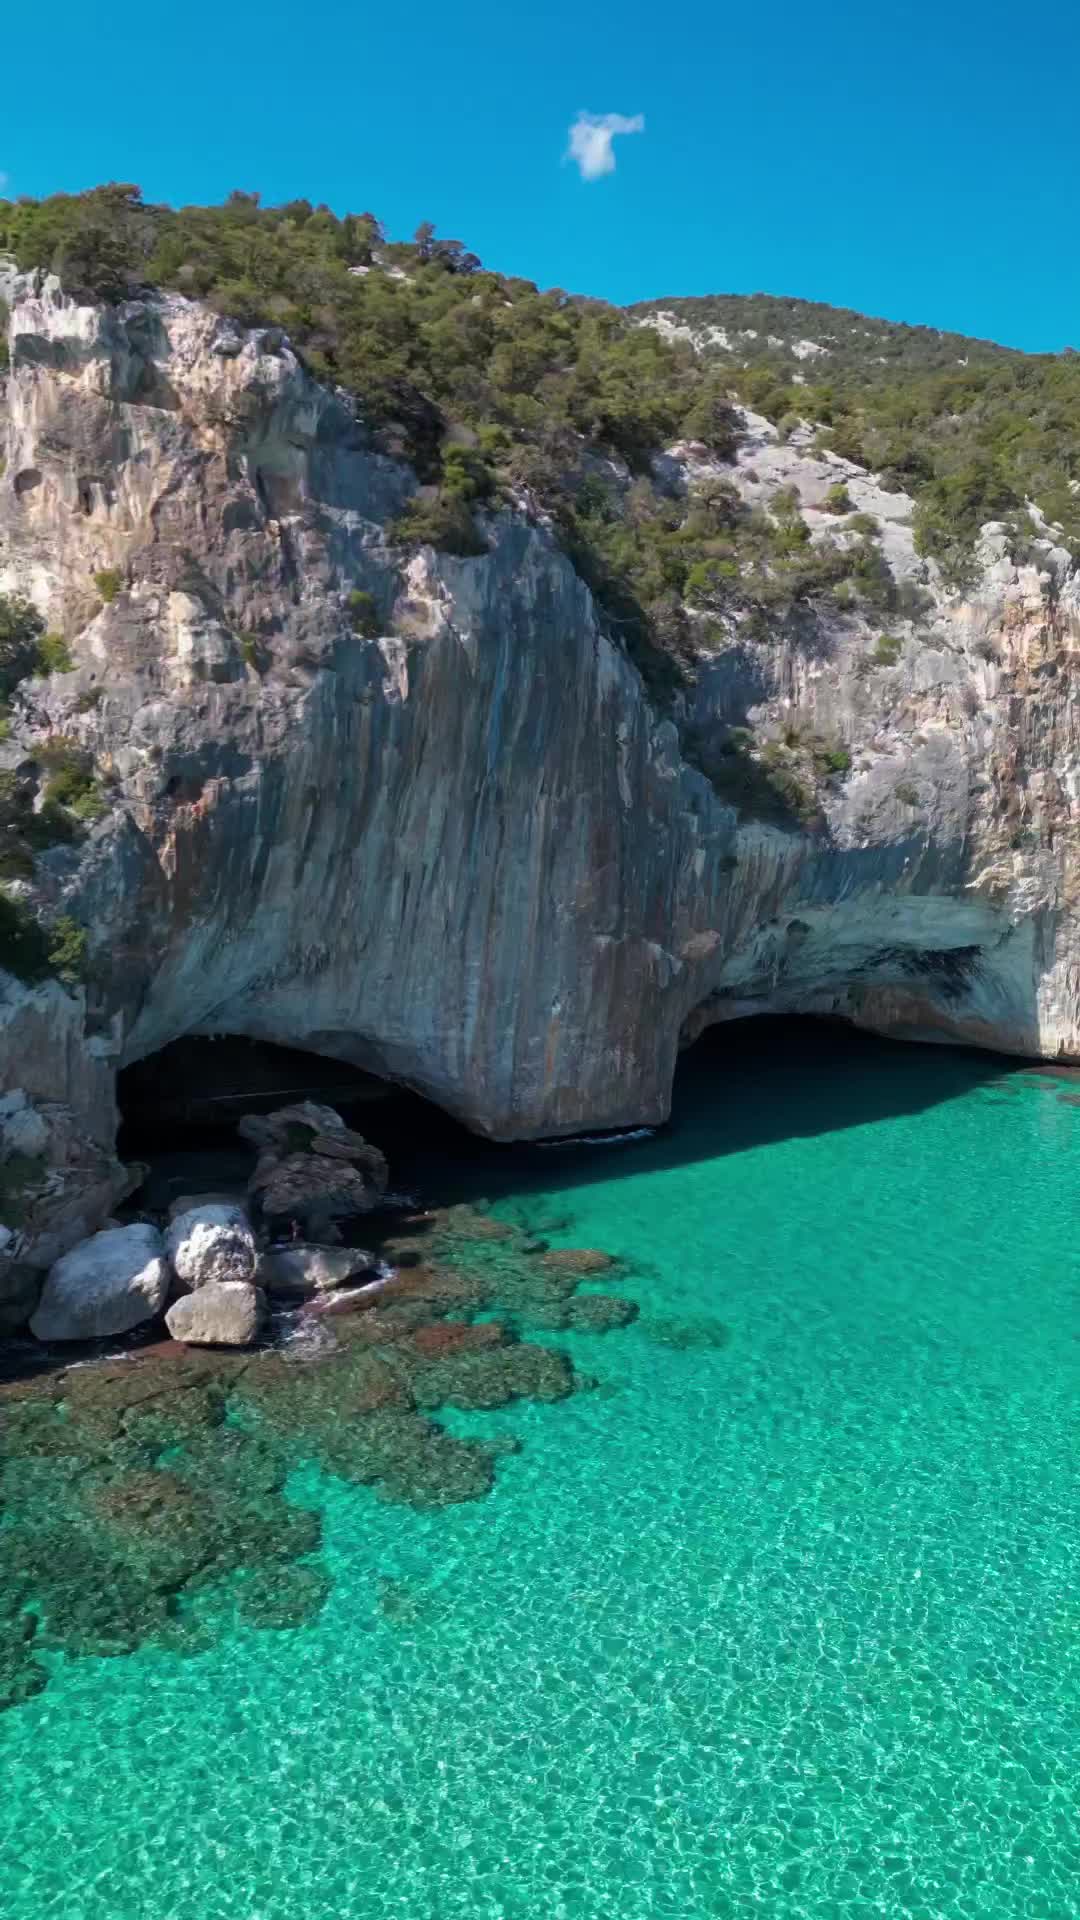 Discover Grotte del Bue Marino in Dorgali, Italy